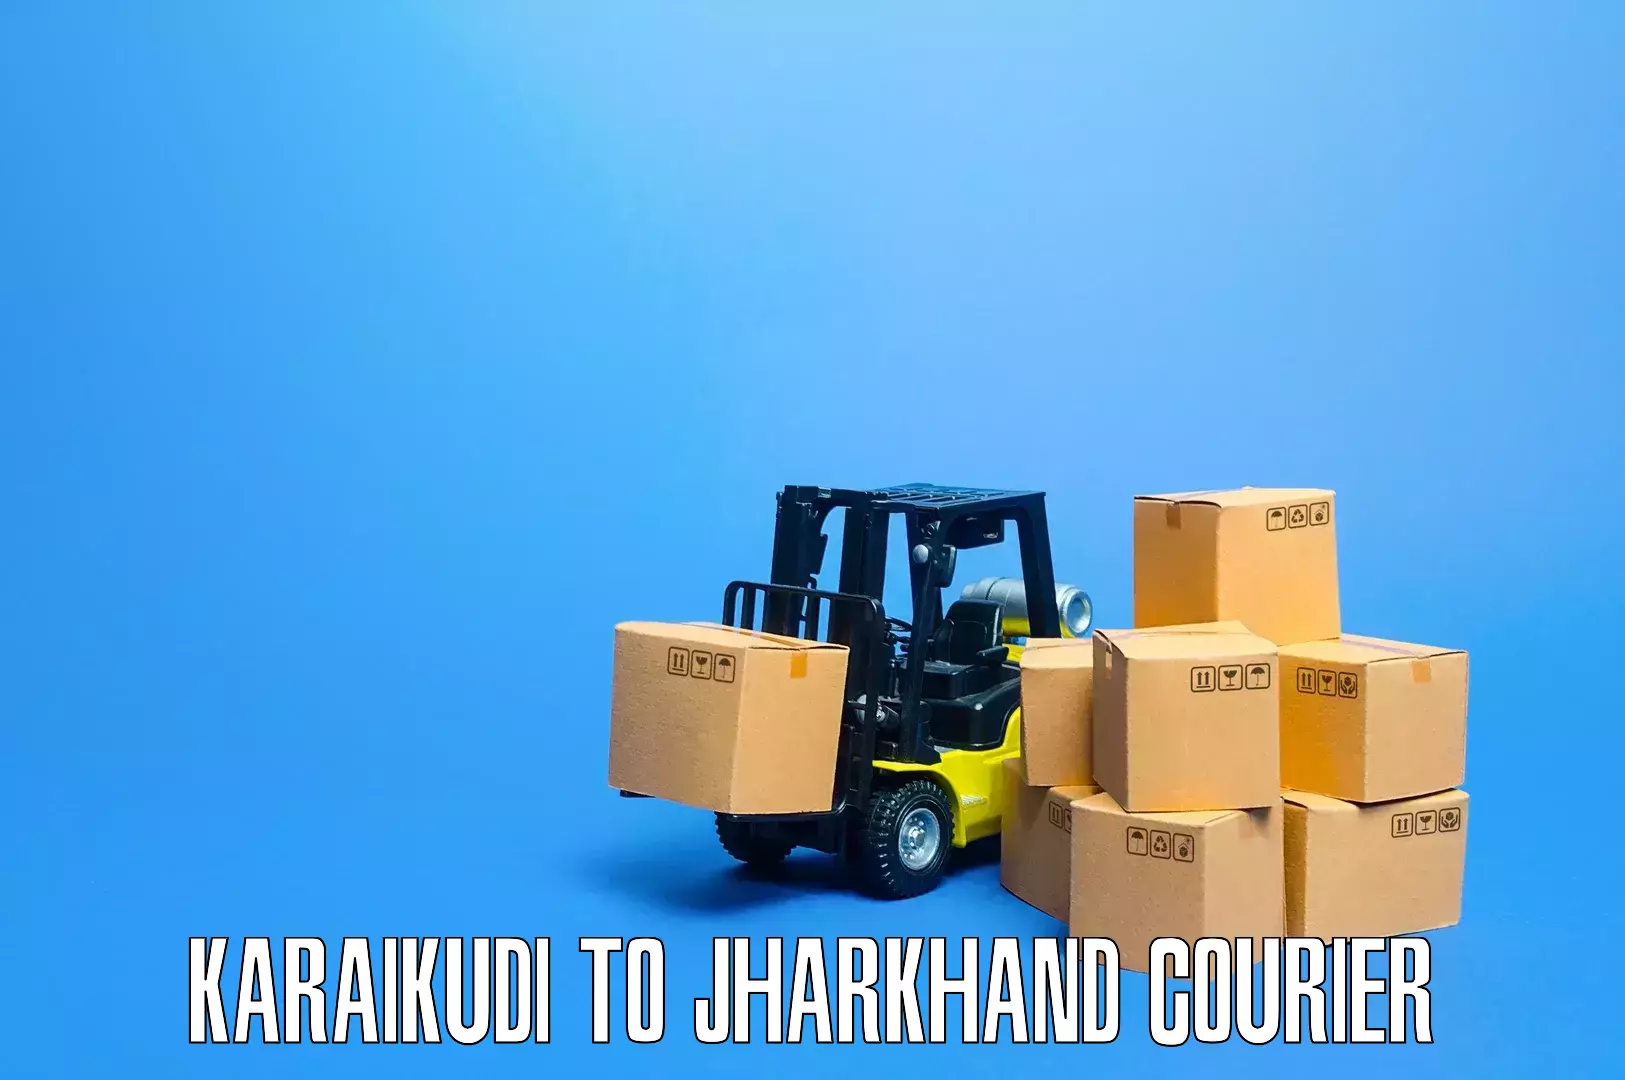 Home moving experts Karaikudi to Jharkhand